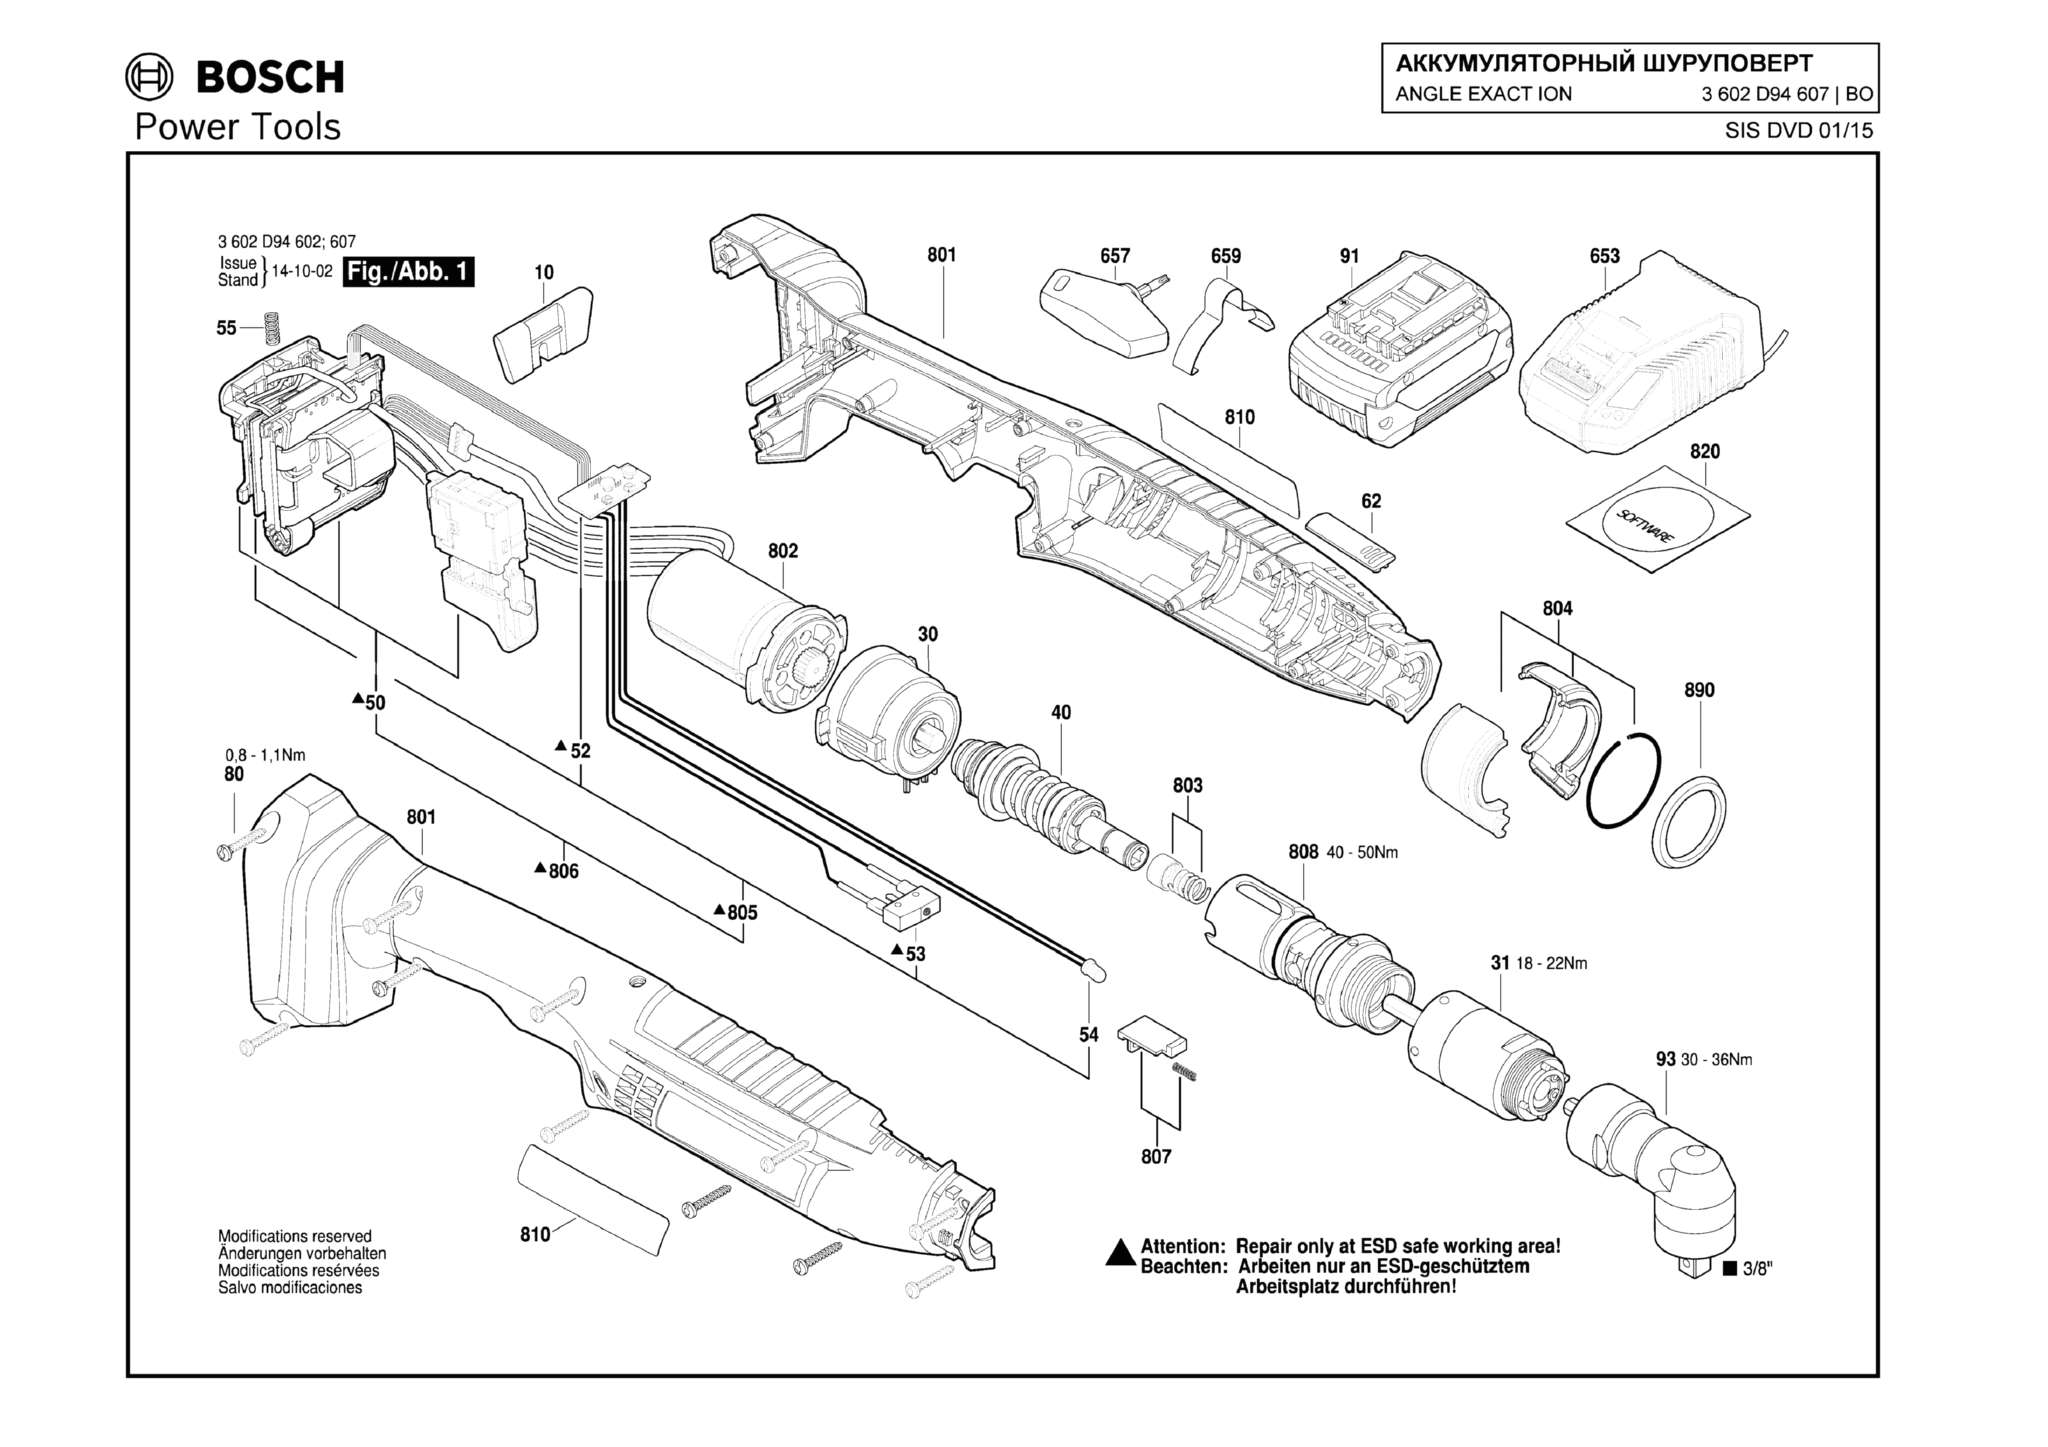 Запчасти, схема и деталировка Bosch ANGLE EXACT ION 30-290 (ТИП 3602D94607)